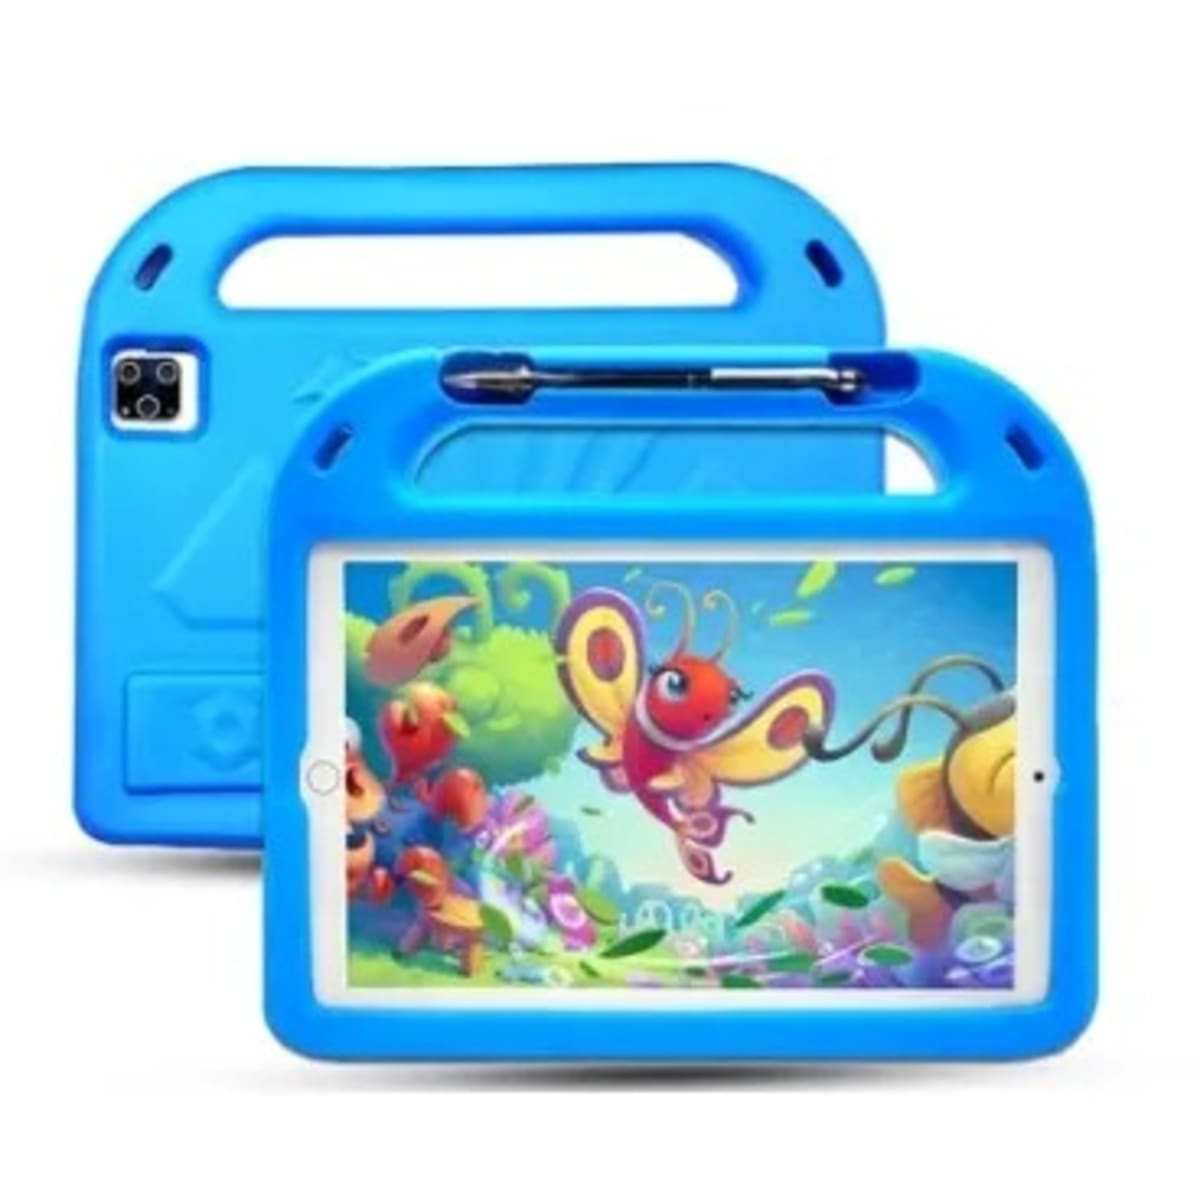 Bebe B2050 Pro+ Android Kids Tablet - 256gb Rom - 6gb Ram - 5g Dual Sim -  5000mah - Blue | Konga Online Shopping